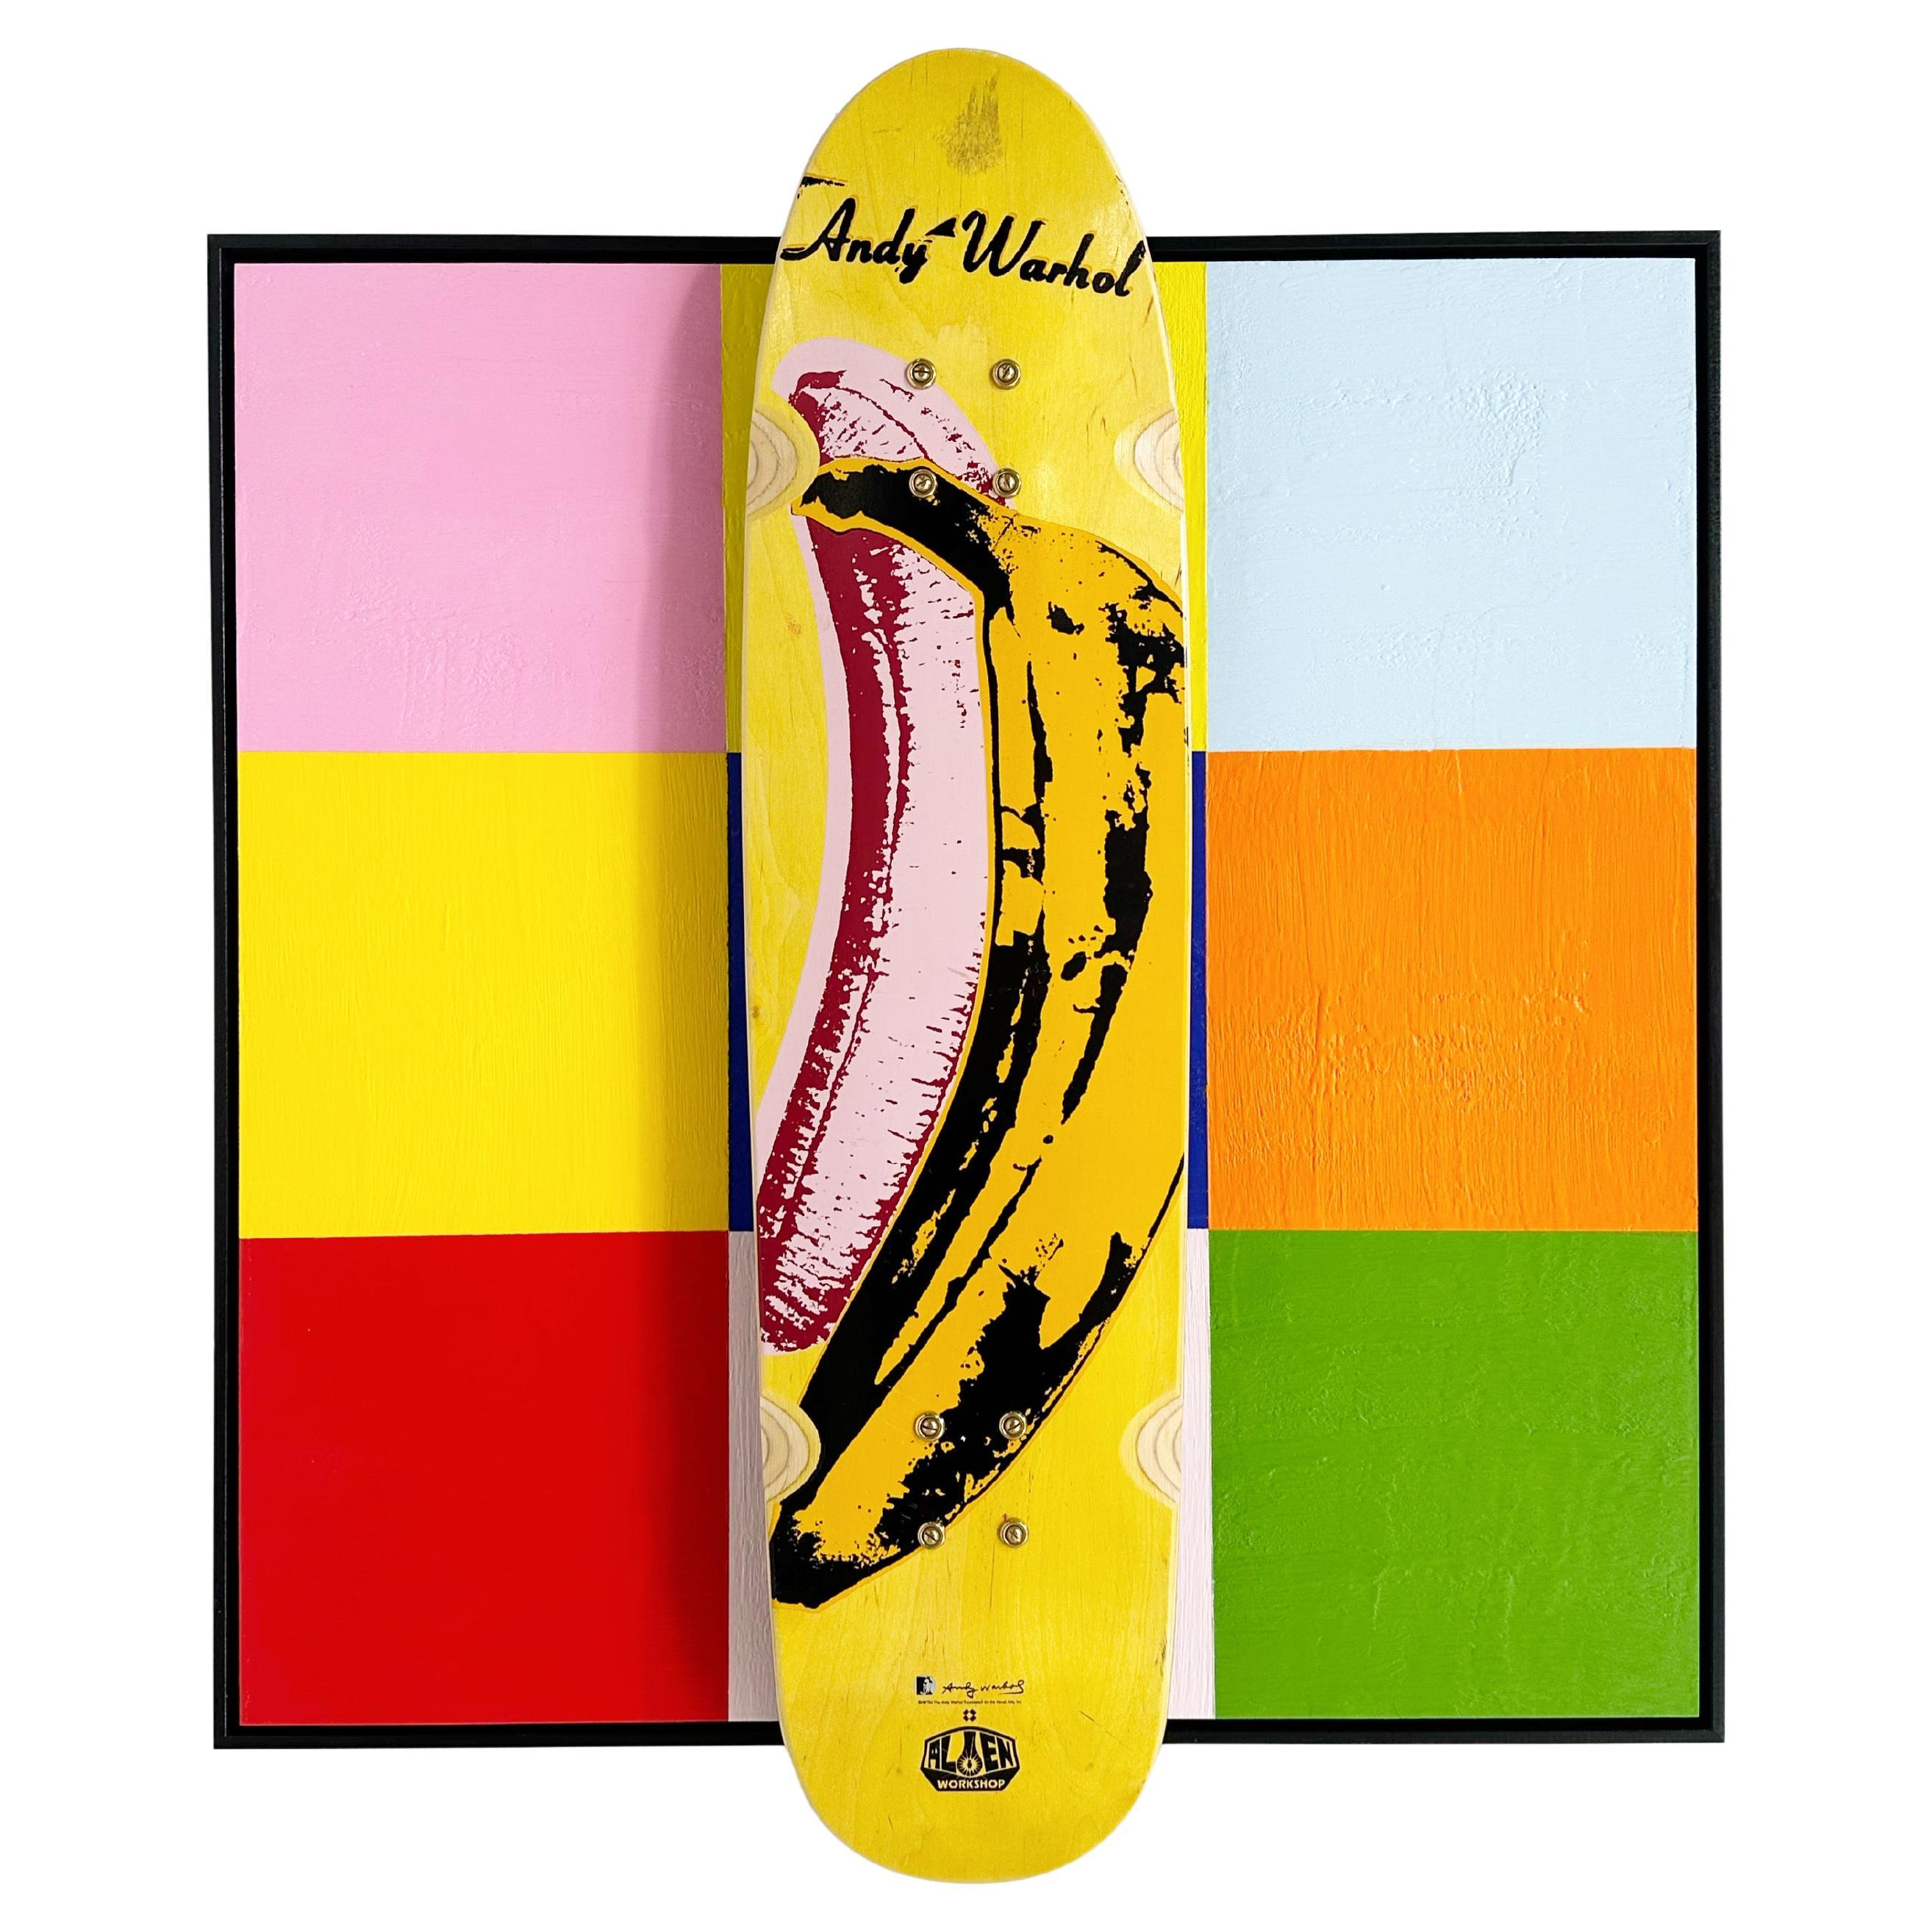 John O'Hara. Deck, Banana, 2023, Encaustic and Skate Deck Painting